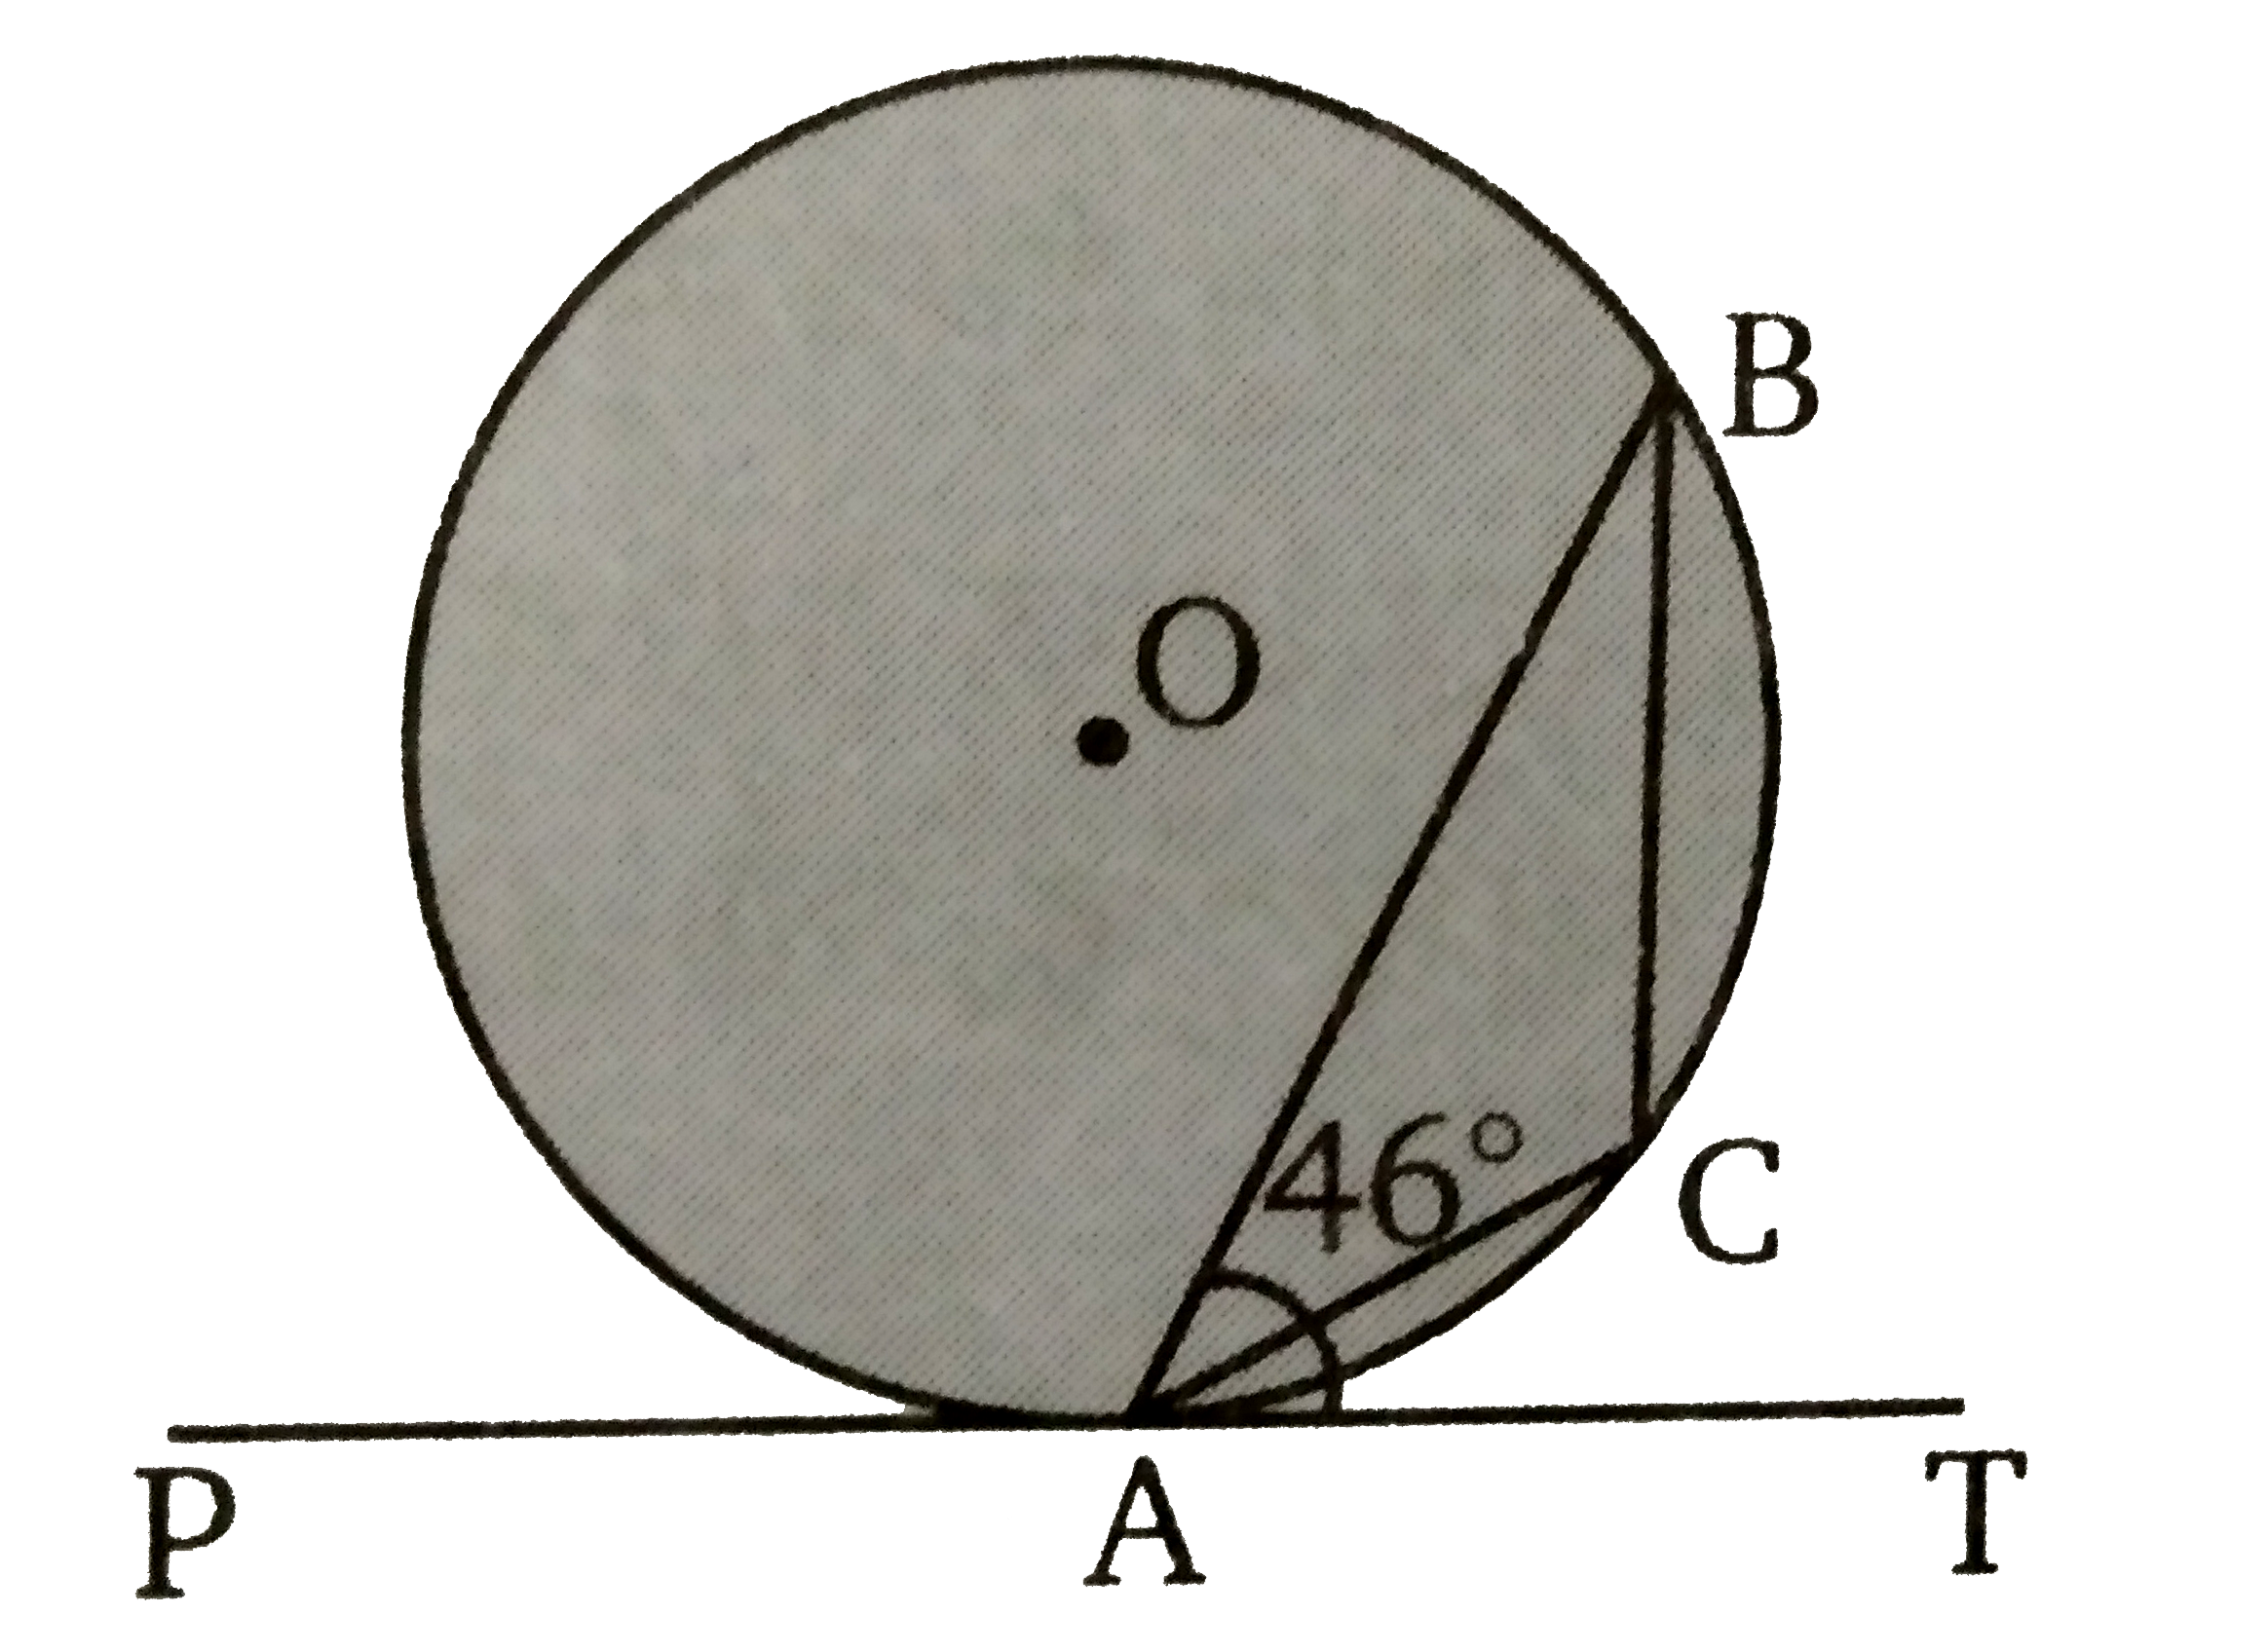 दिये गये चित्र में रेखा PAT  वृत्त को बिन्दु A पर स्पर्श करती है। बिन्दु A से एक जीवा AB  इस प्रकार खींची जाती है रेखा  PAT  से 46^(@)   का कोण बनाती  है। angle ACB,  रेखाखण्ड  ACB   में  कोण  है। angle ACB  की माप ज्ञात कीजिए ।